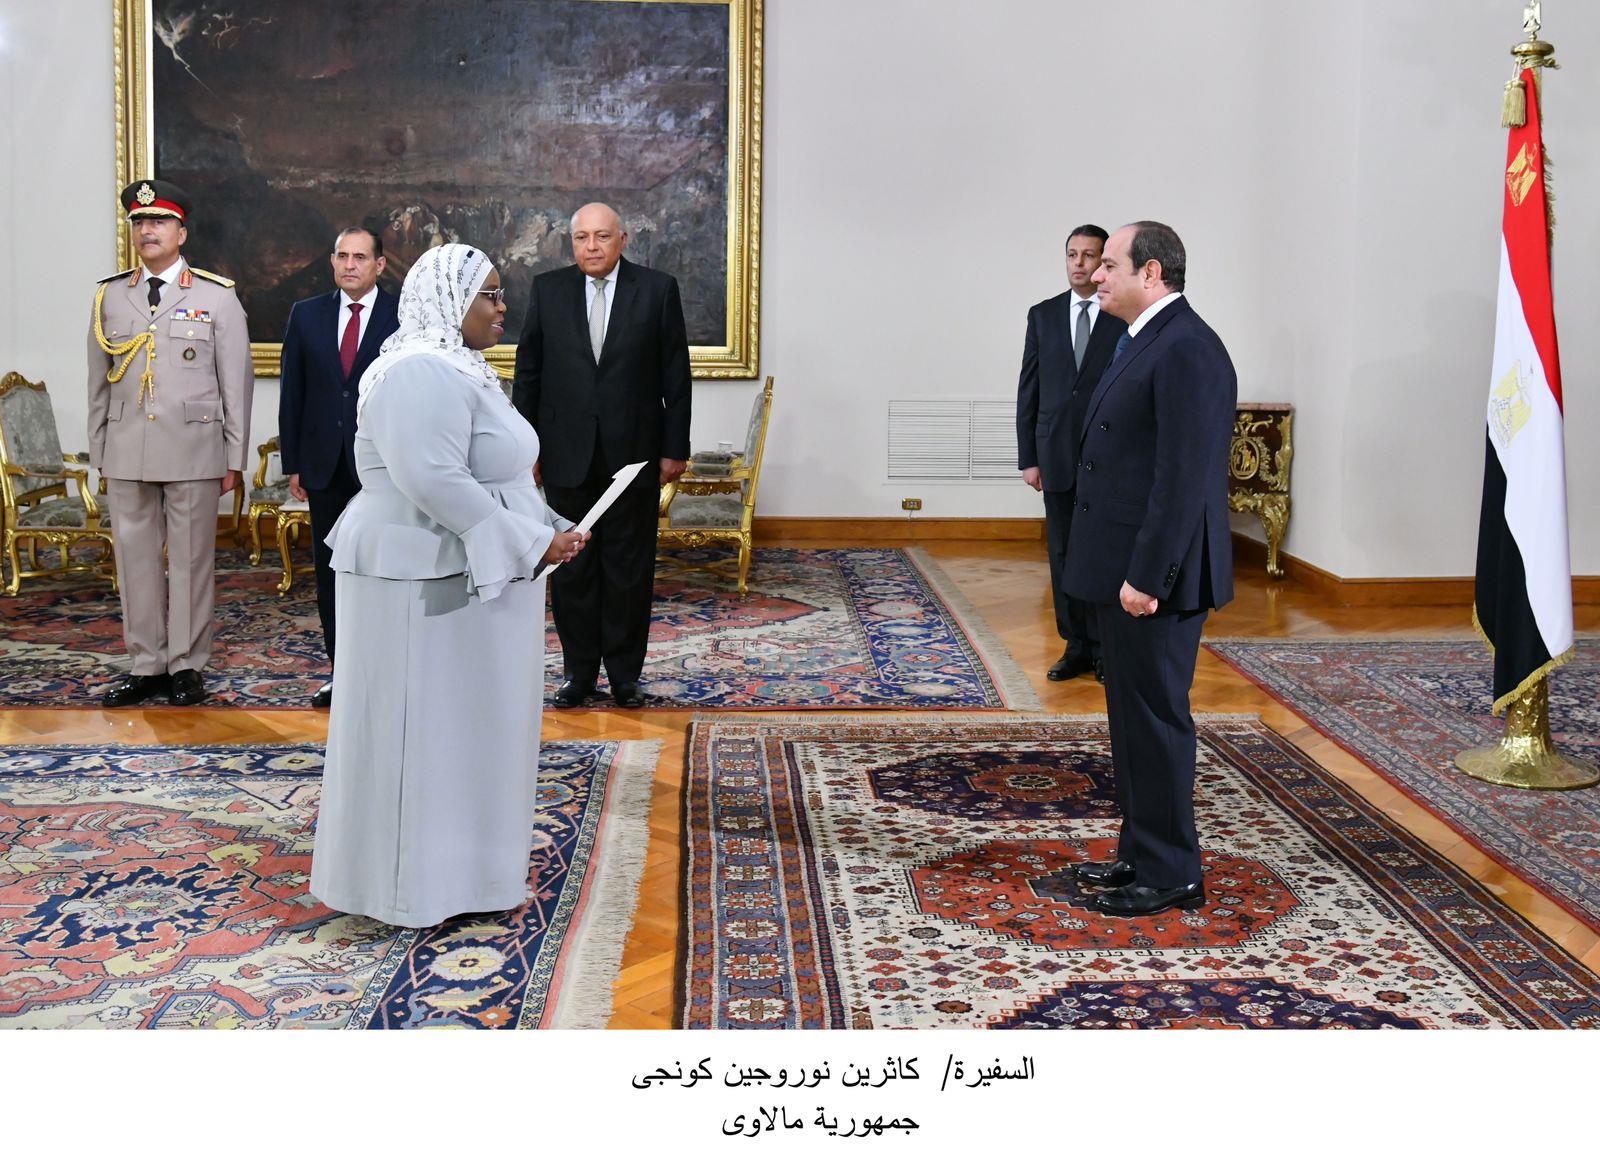 الرئيس السيسي يتسلم أوراق اعتماد 13 سفيراً جديداً